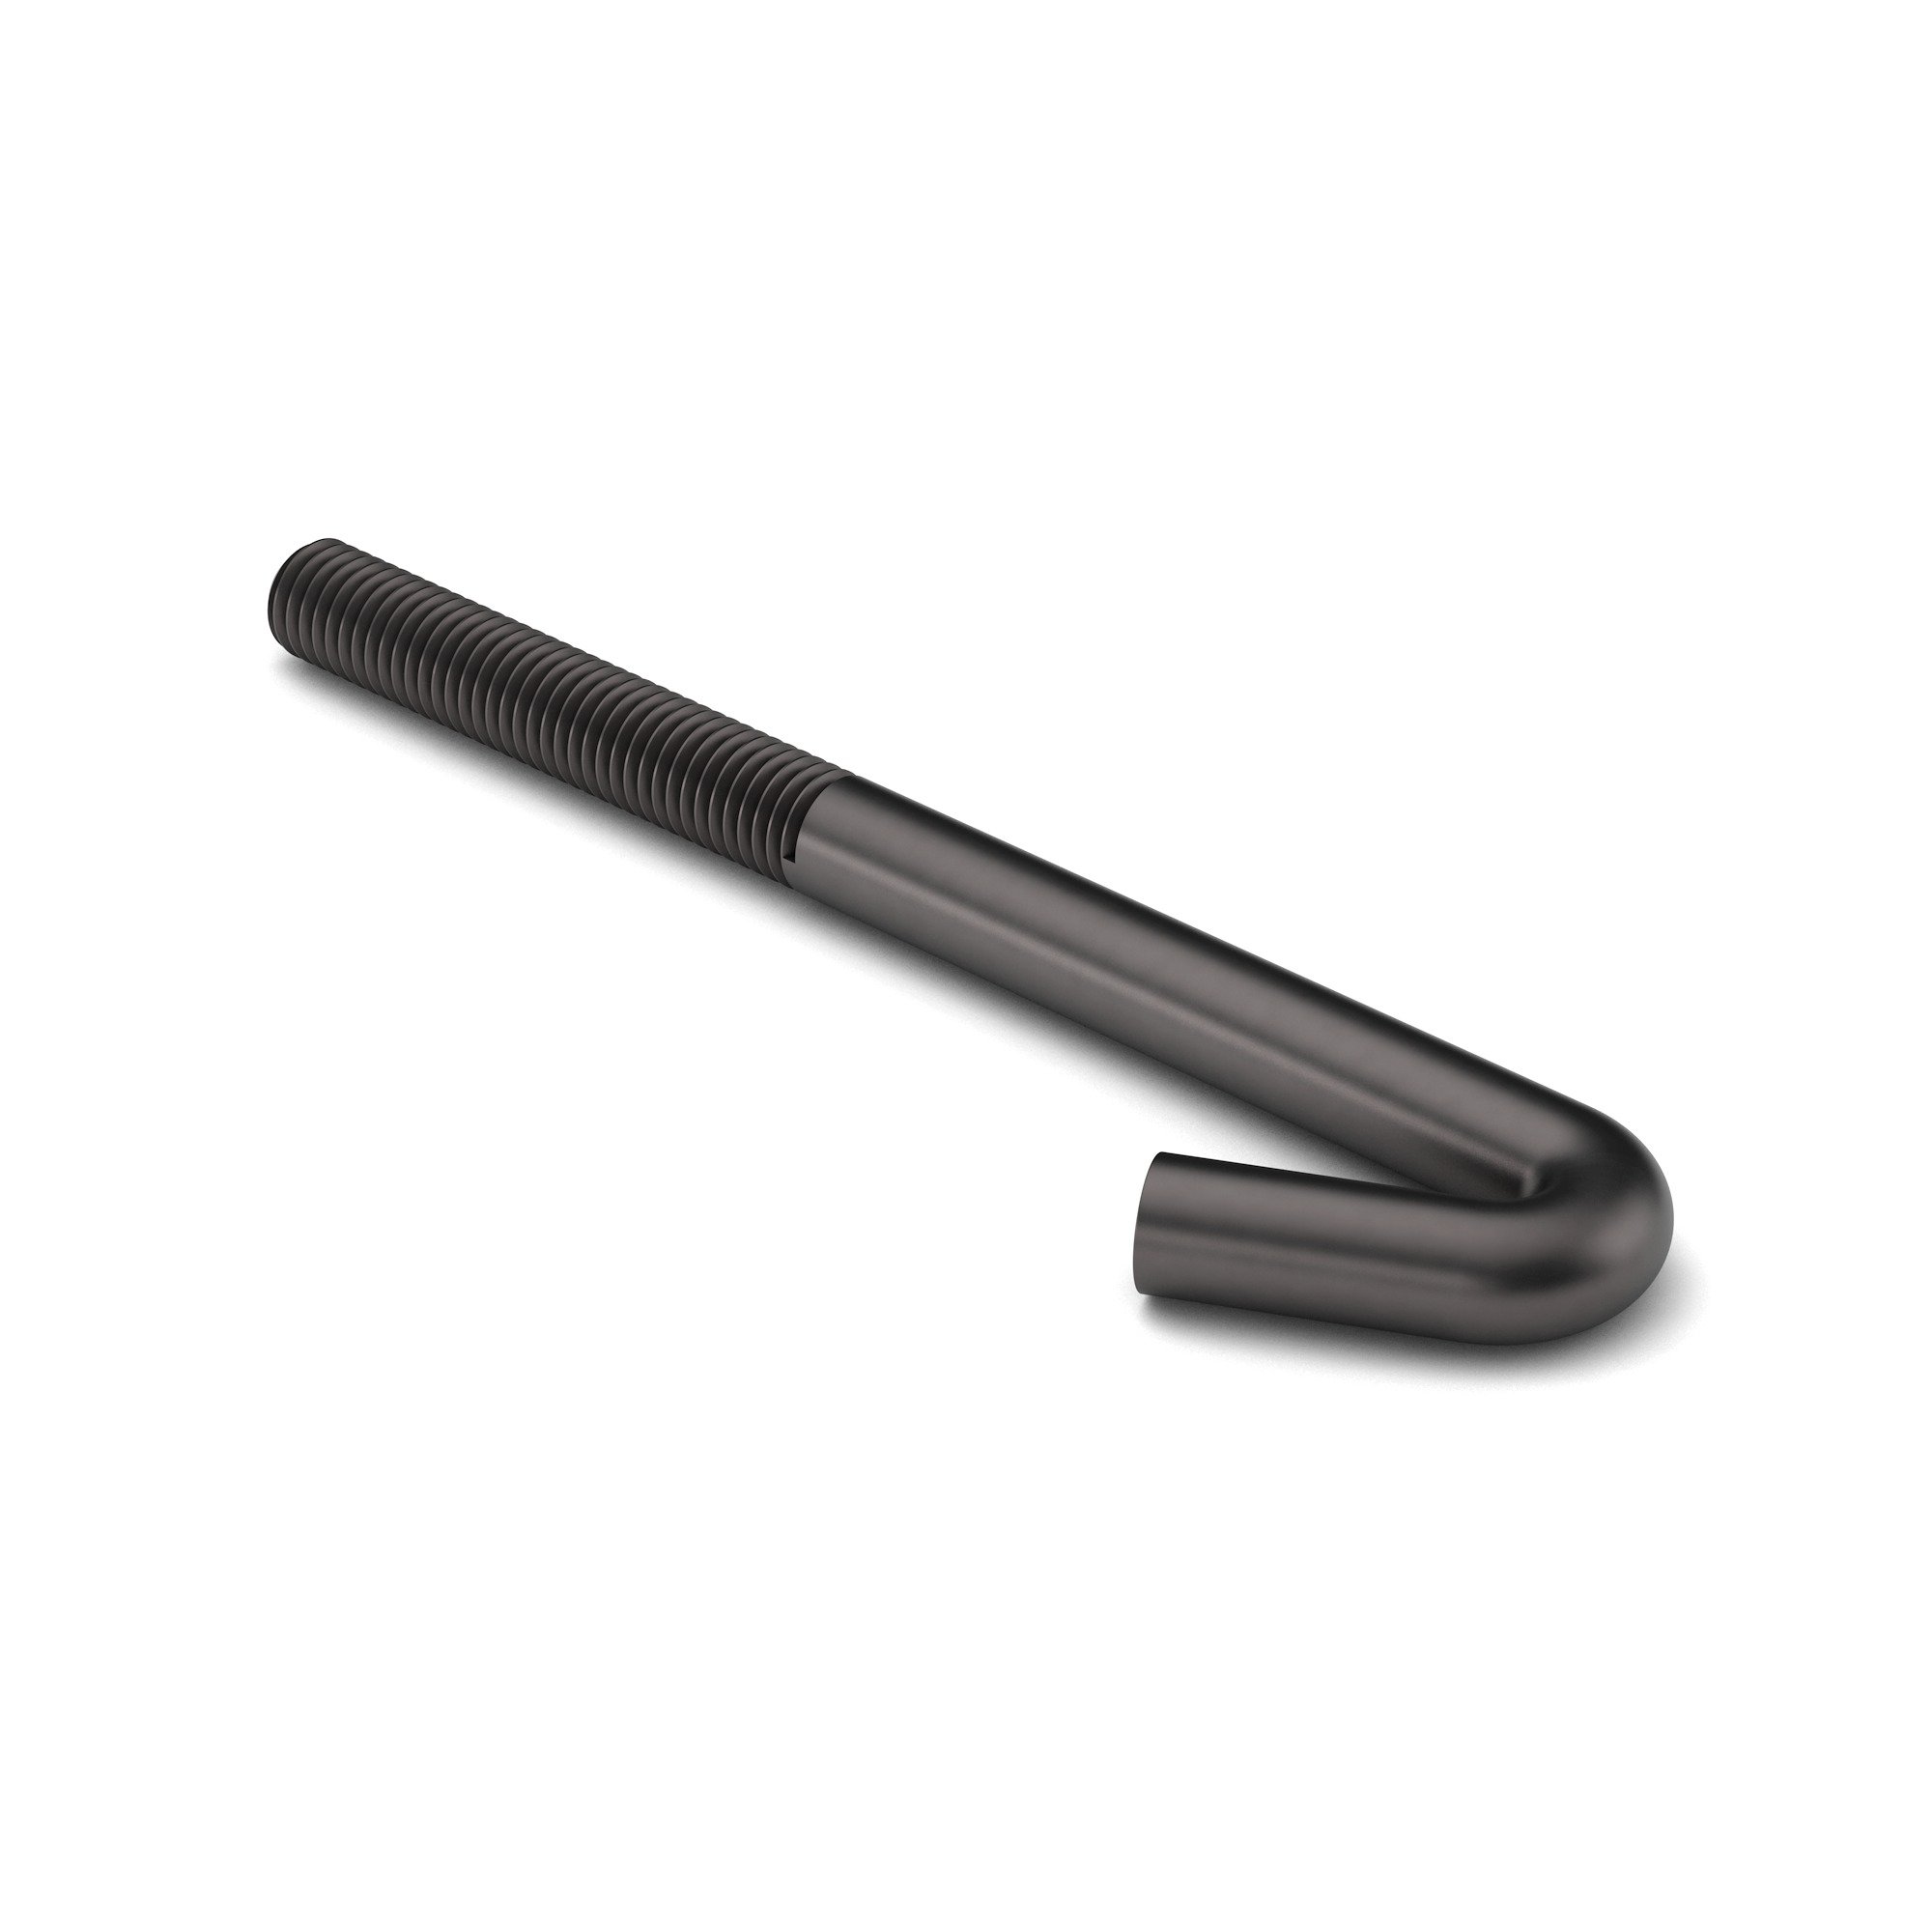 M10-1.5x260 GR 2 Steel Hook Bolt - J Zinc Clear Drawing#1001388/A